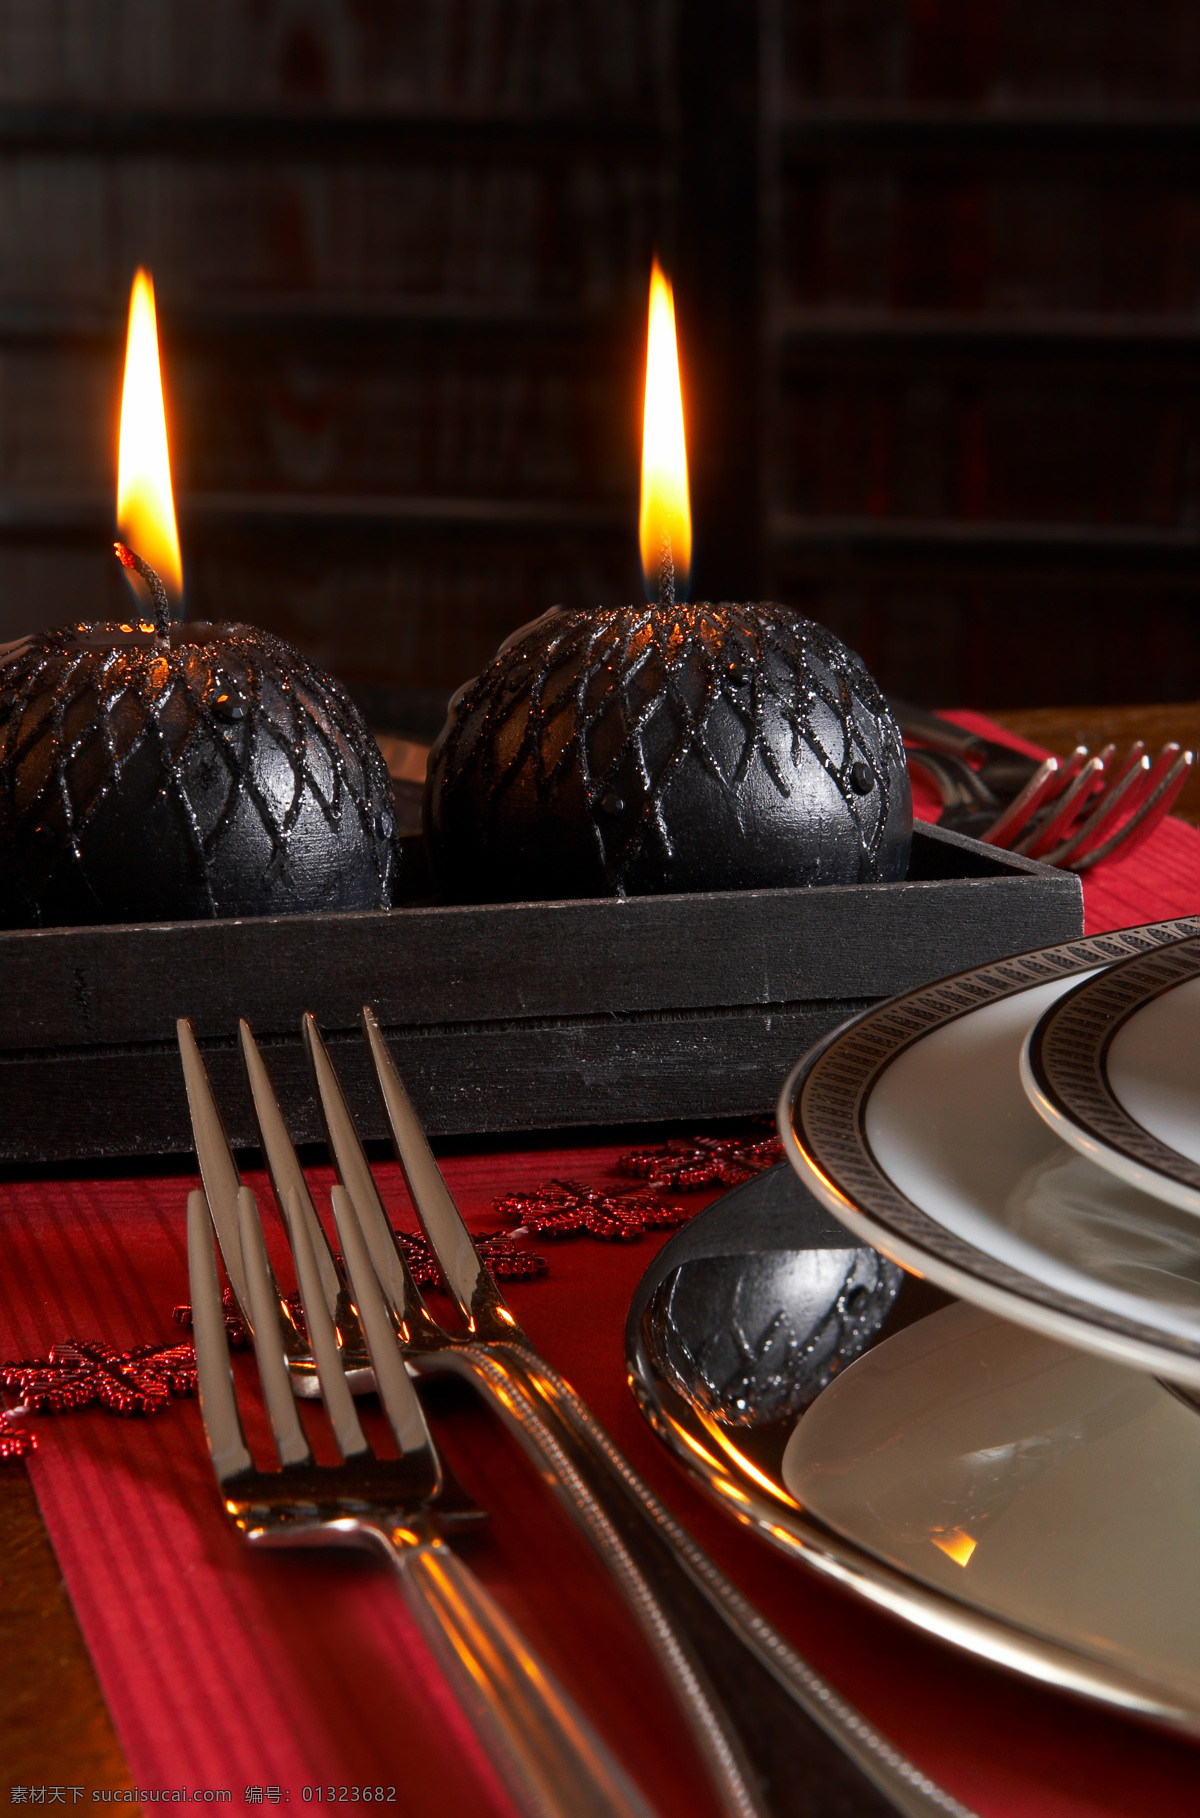 蜡烛与叉子 蜡烛 叉子 西餐餐具 盘子 餐具 餐桌布置 其他类别 生活百科 黑色